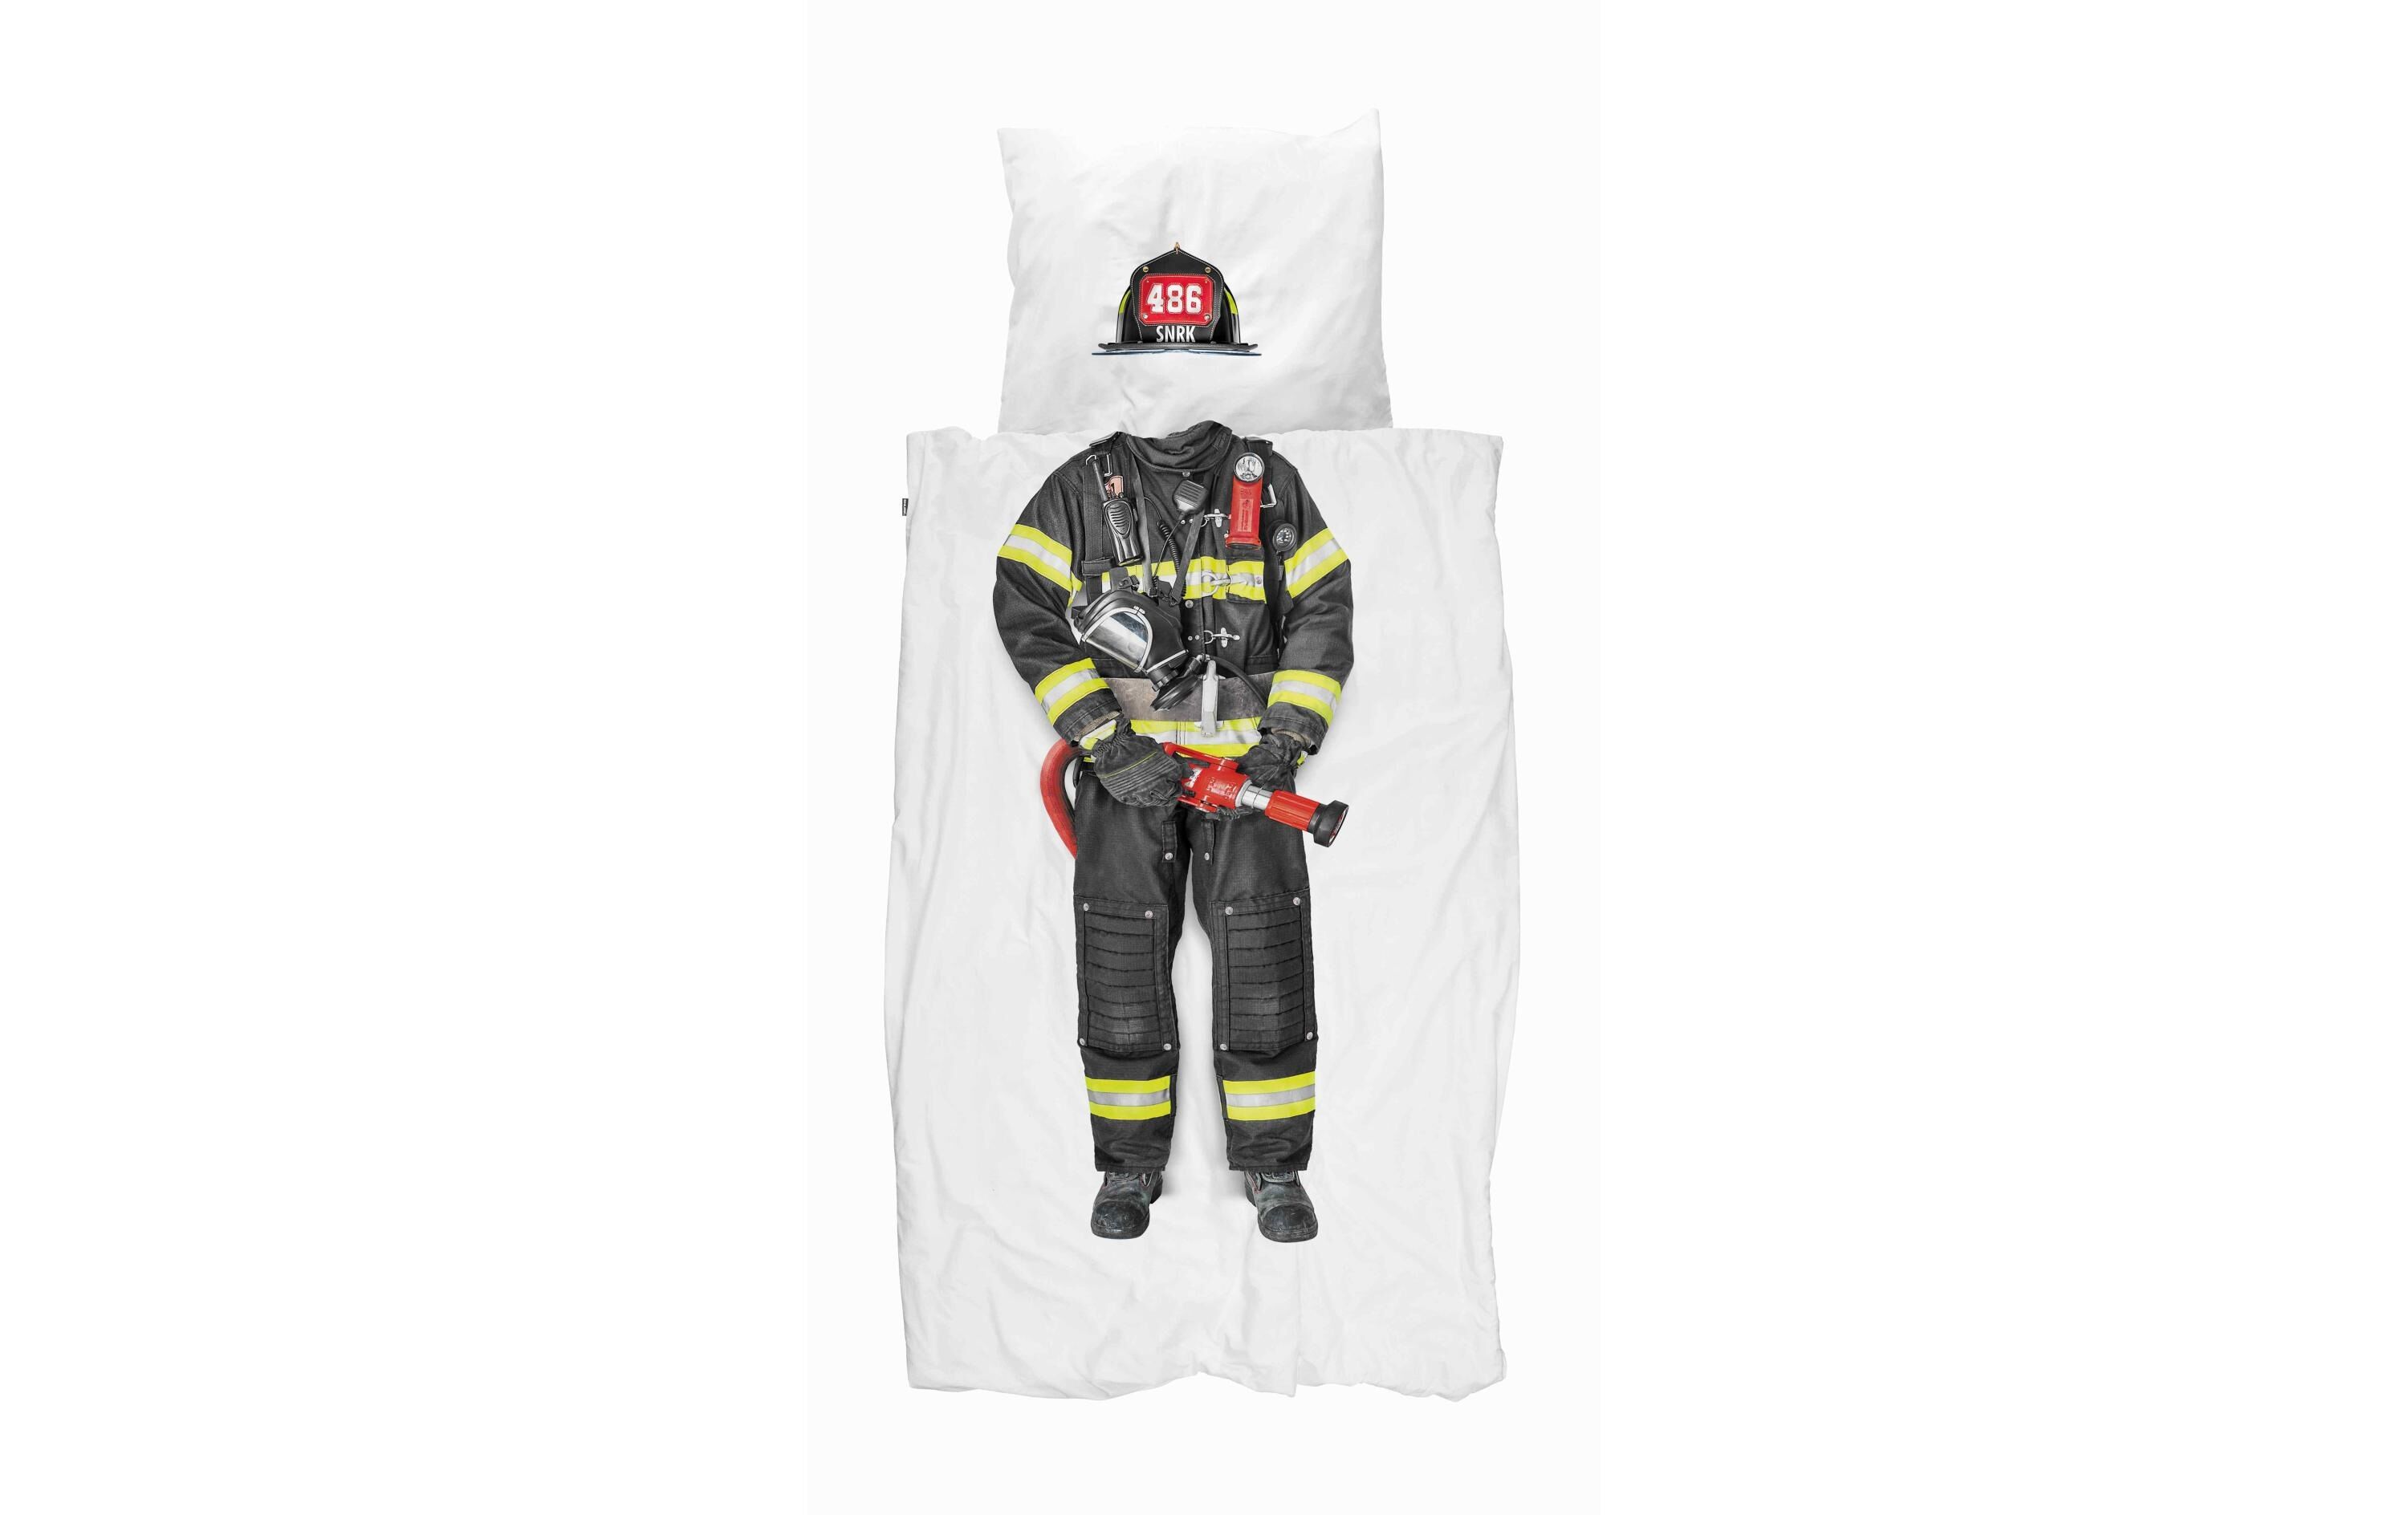 Snurk Kinderbettwäsche »Feuerwehrmann Bettwäschegarnitur« weiss